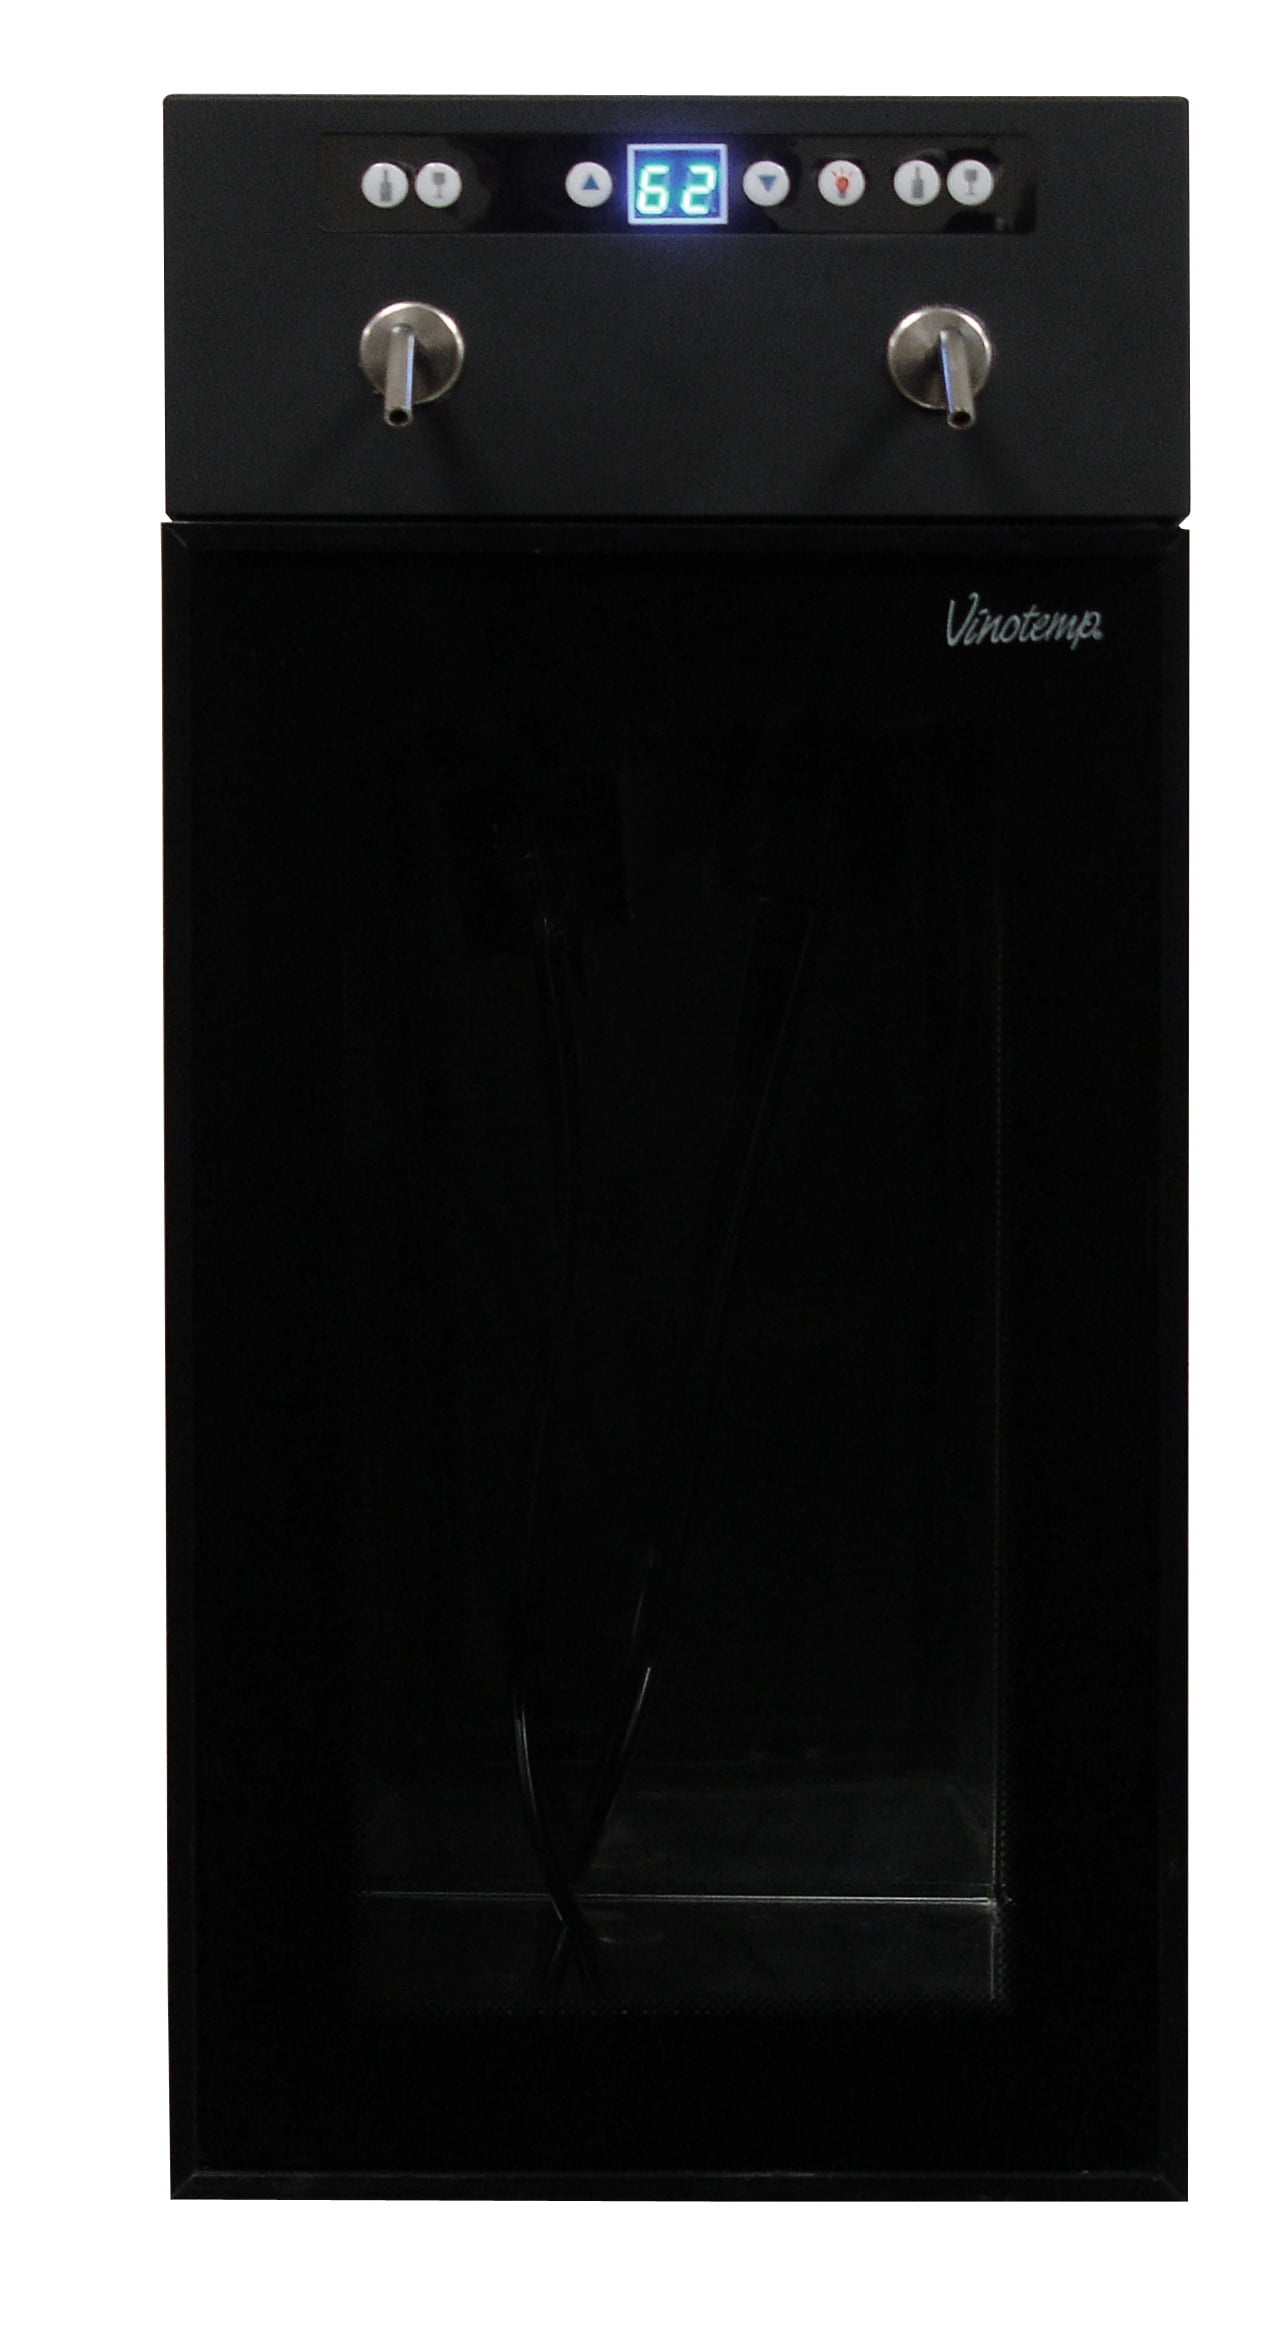 2-Bottle Wine Dispenser (Black) – Vinotemp